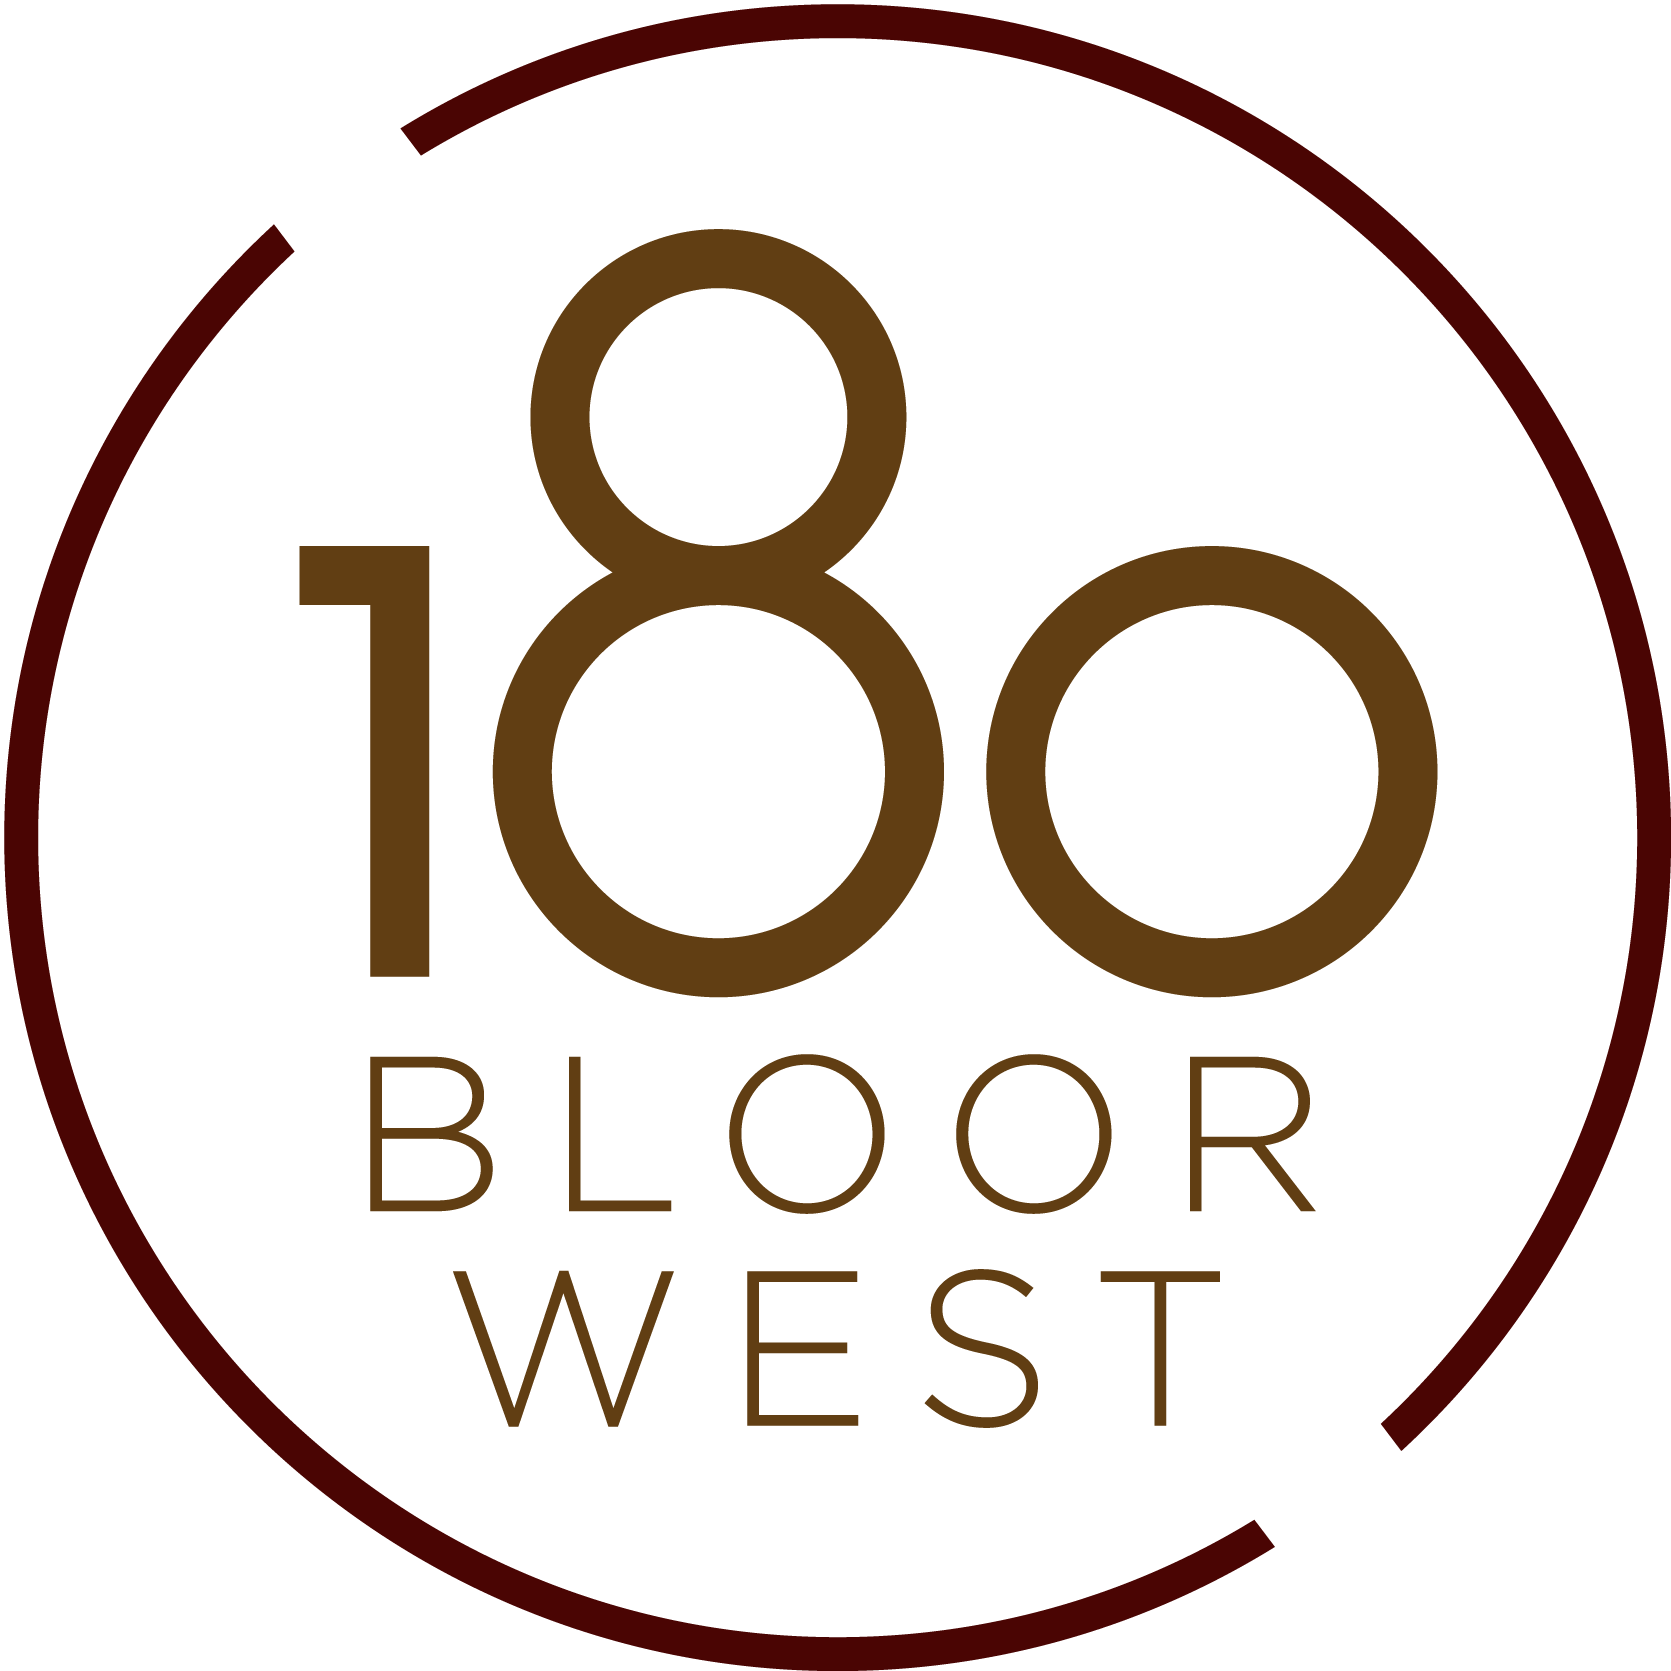 180 Bloor West